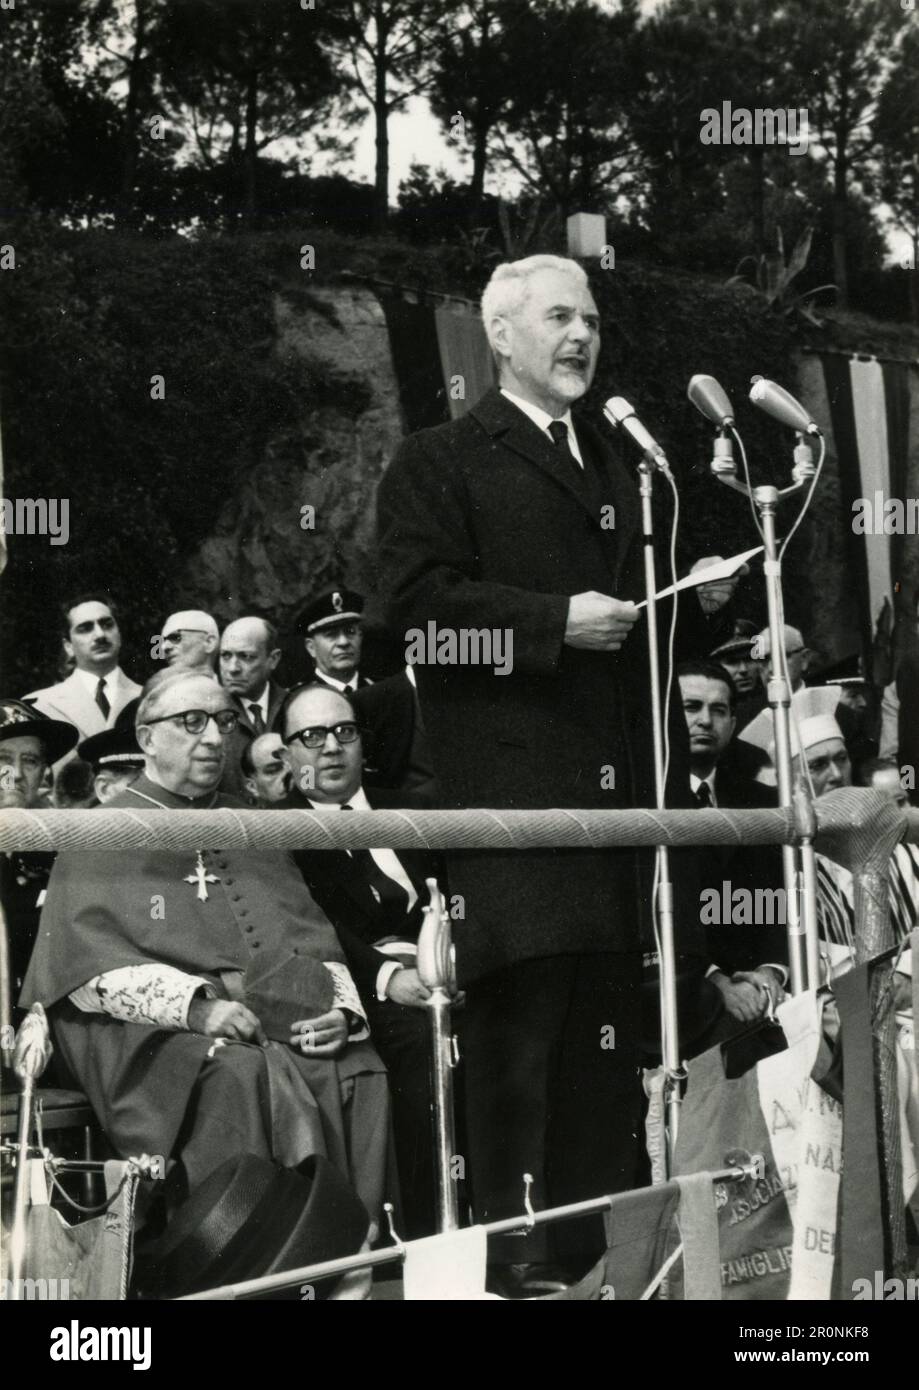 Político italiano pronunciando un discurso en una conmemoración, Italia 1965 Foto de stock